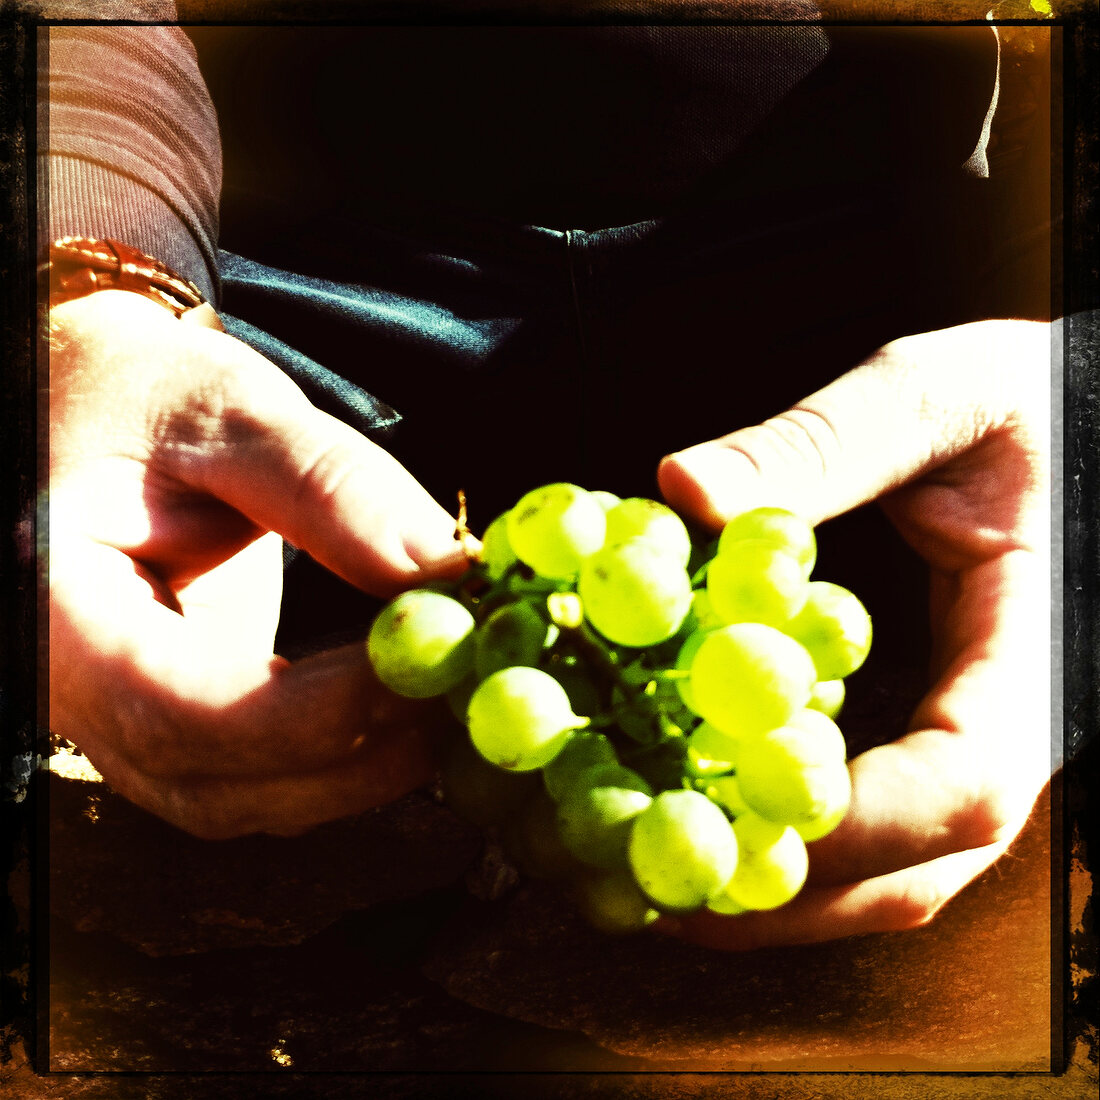 Weintrauben in den Händen, aus dem W einanbaugebiet Wachau